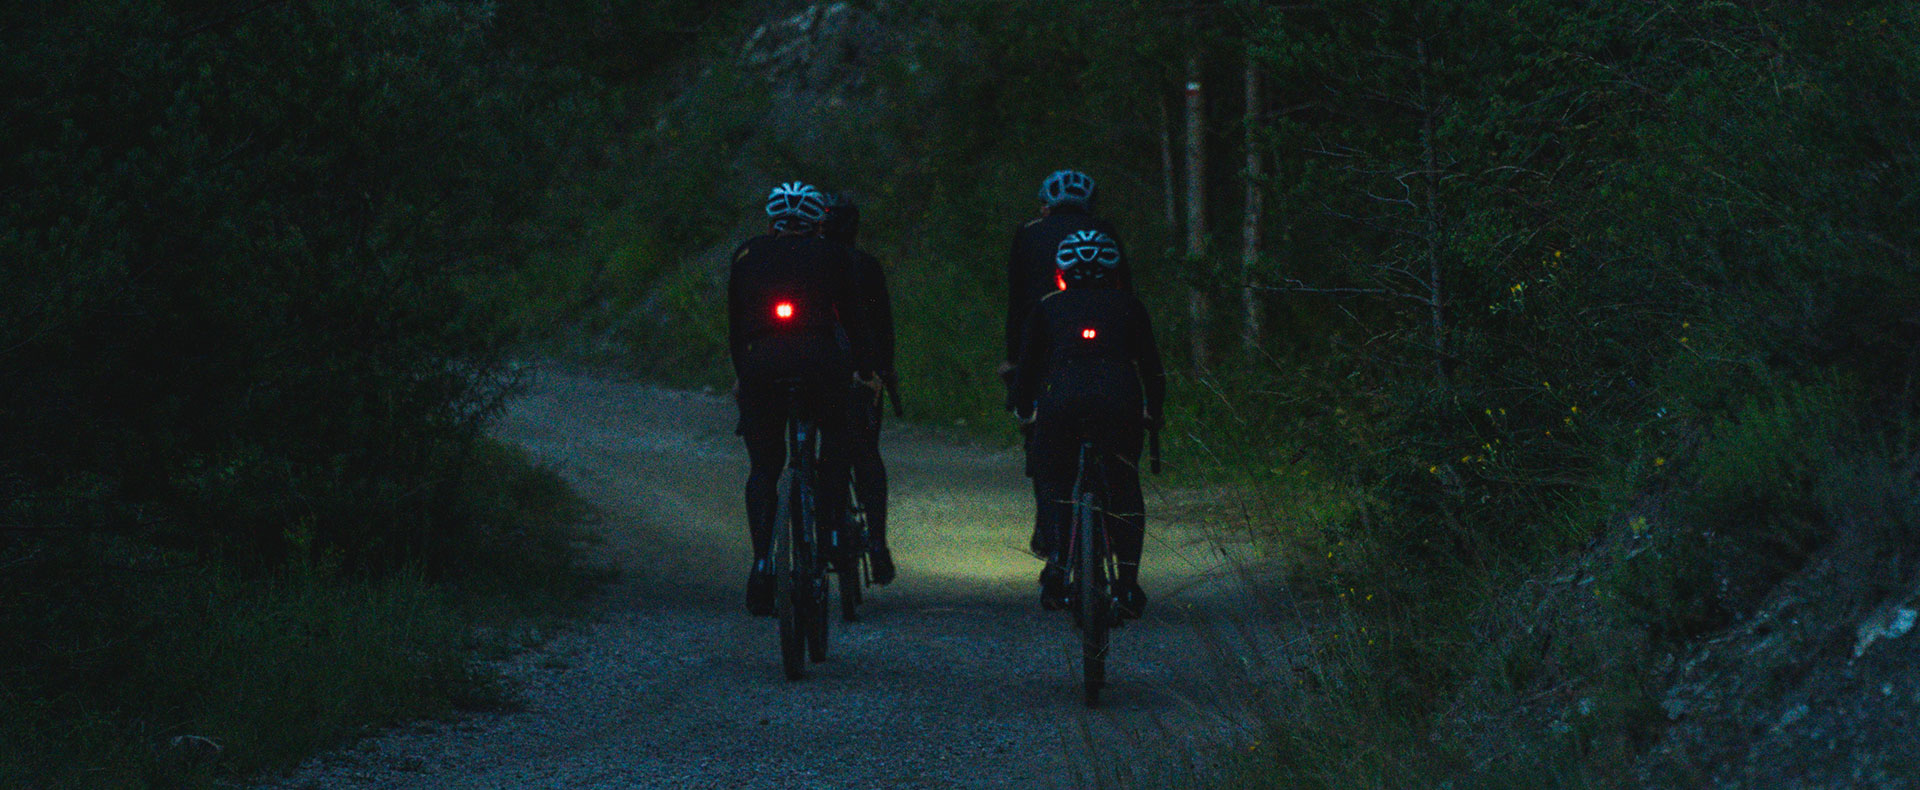 Chaqueta ciclista con luz seguridad ANTARES